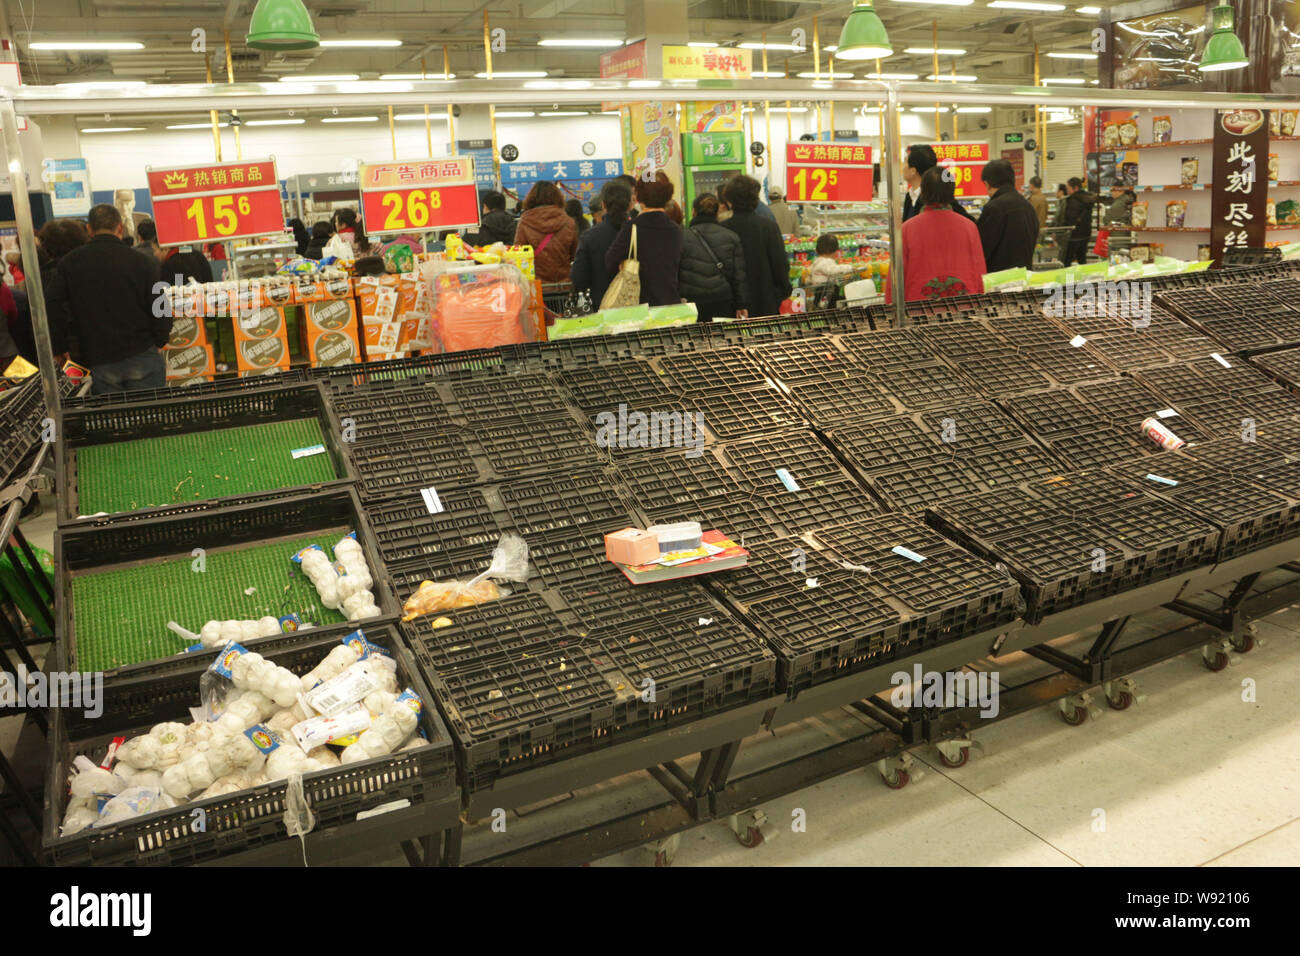 Los clientes chinos caminar pasado casi estantes vacíos en el supermercado Walmart programada para cerrar en la ciudad de Luoyang, provincia de Henan, China central 5 de diciembre Foto de stock